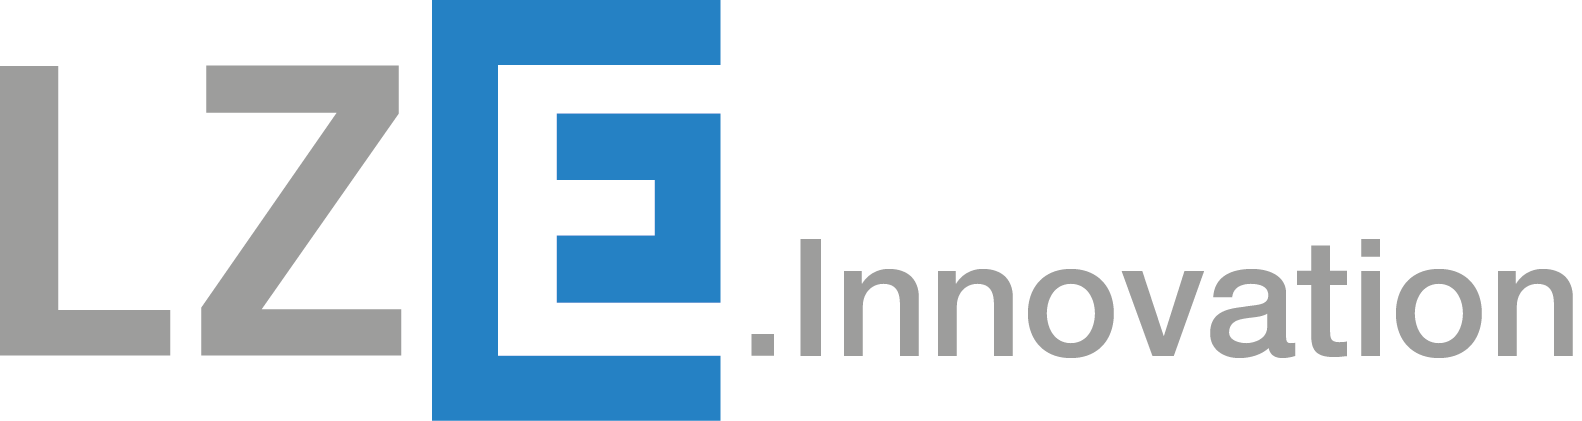 Logo LZE Innovation